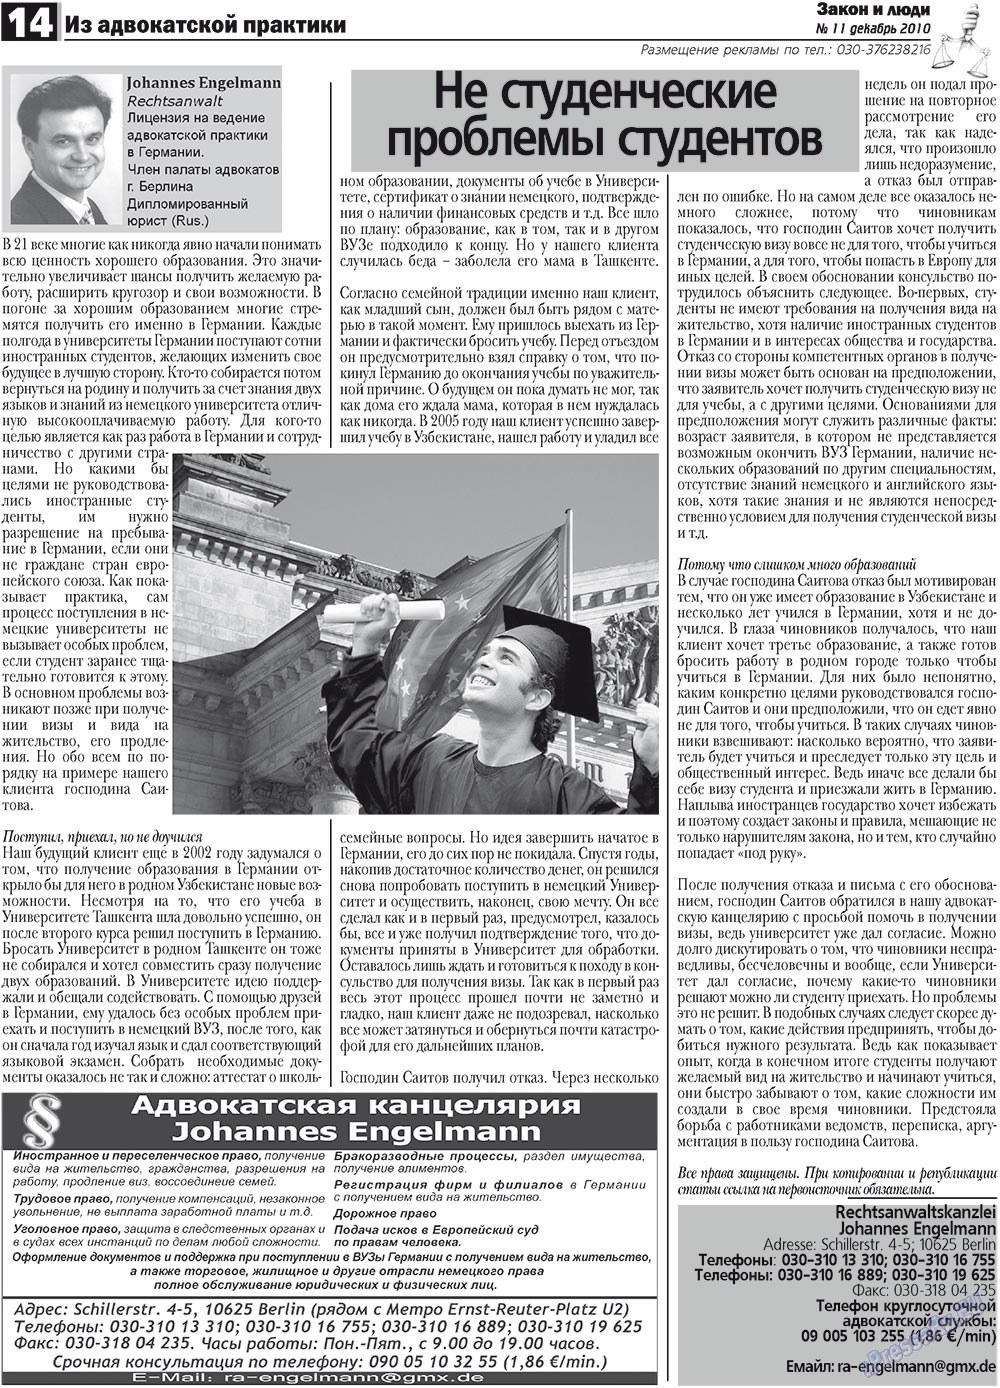 Закон и люди, газета. 2010 №11 стр.14